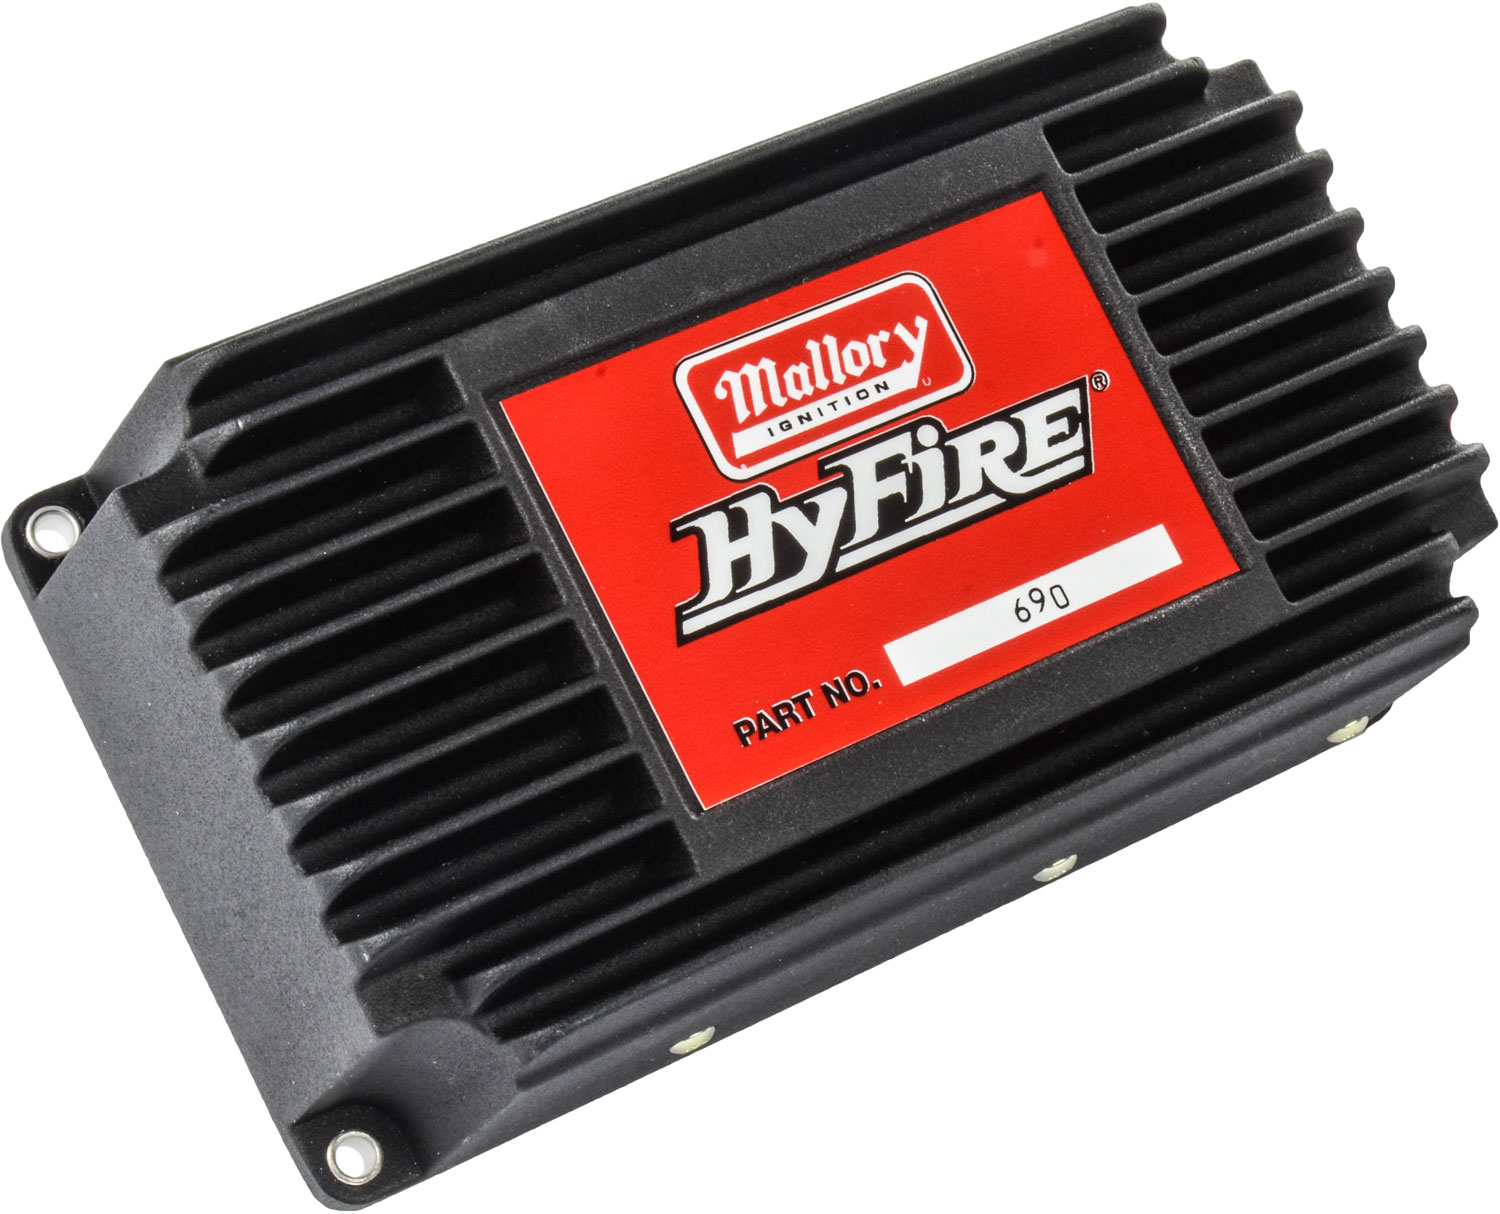 HyFire Ignition Control Box